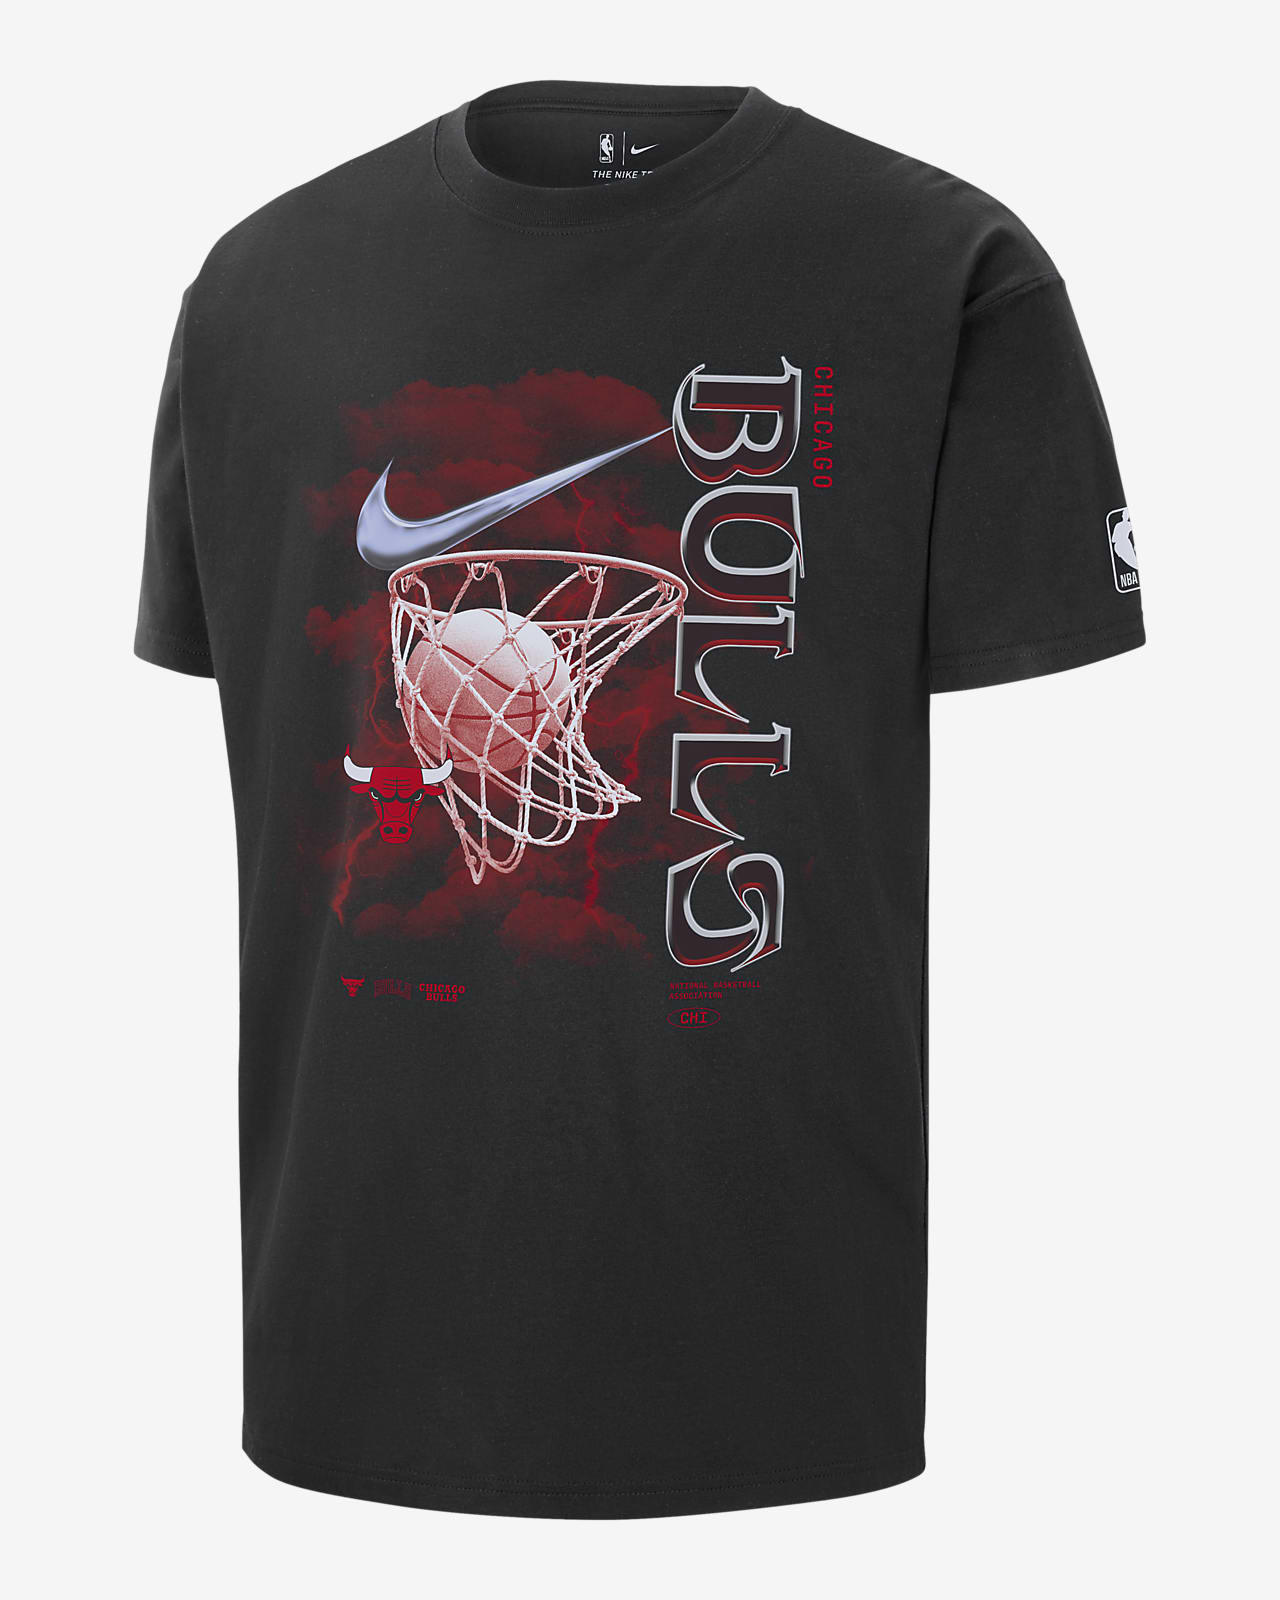 Ανδρικό T-Shirt Nike NBA Σικάγο Μπουλς Courtside Max90